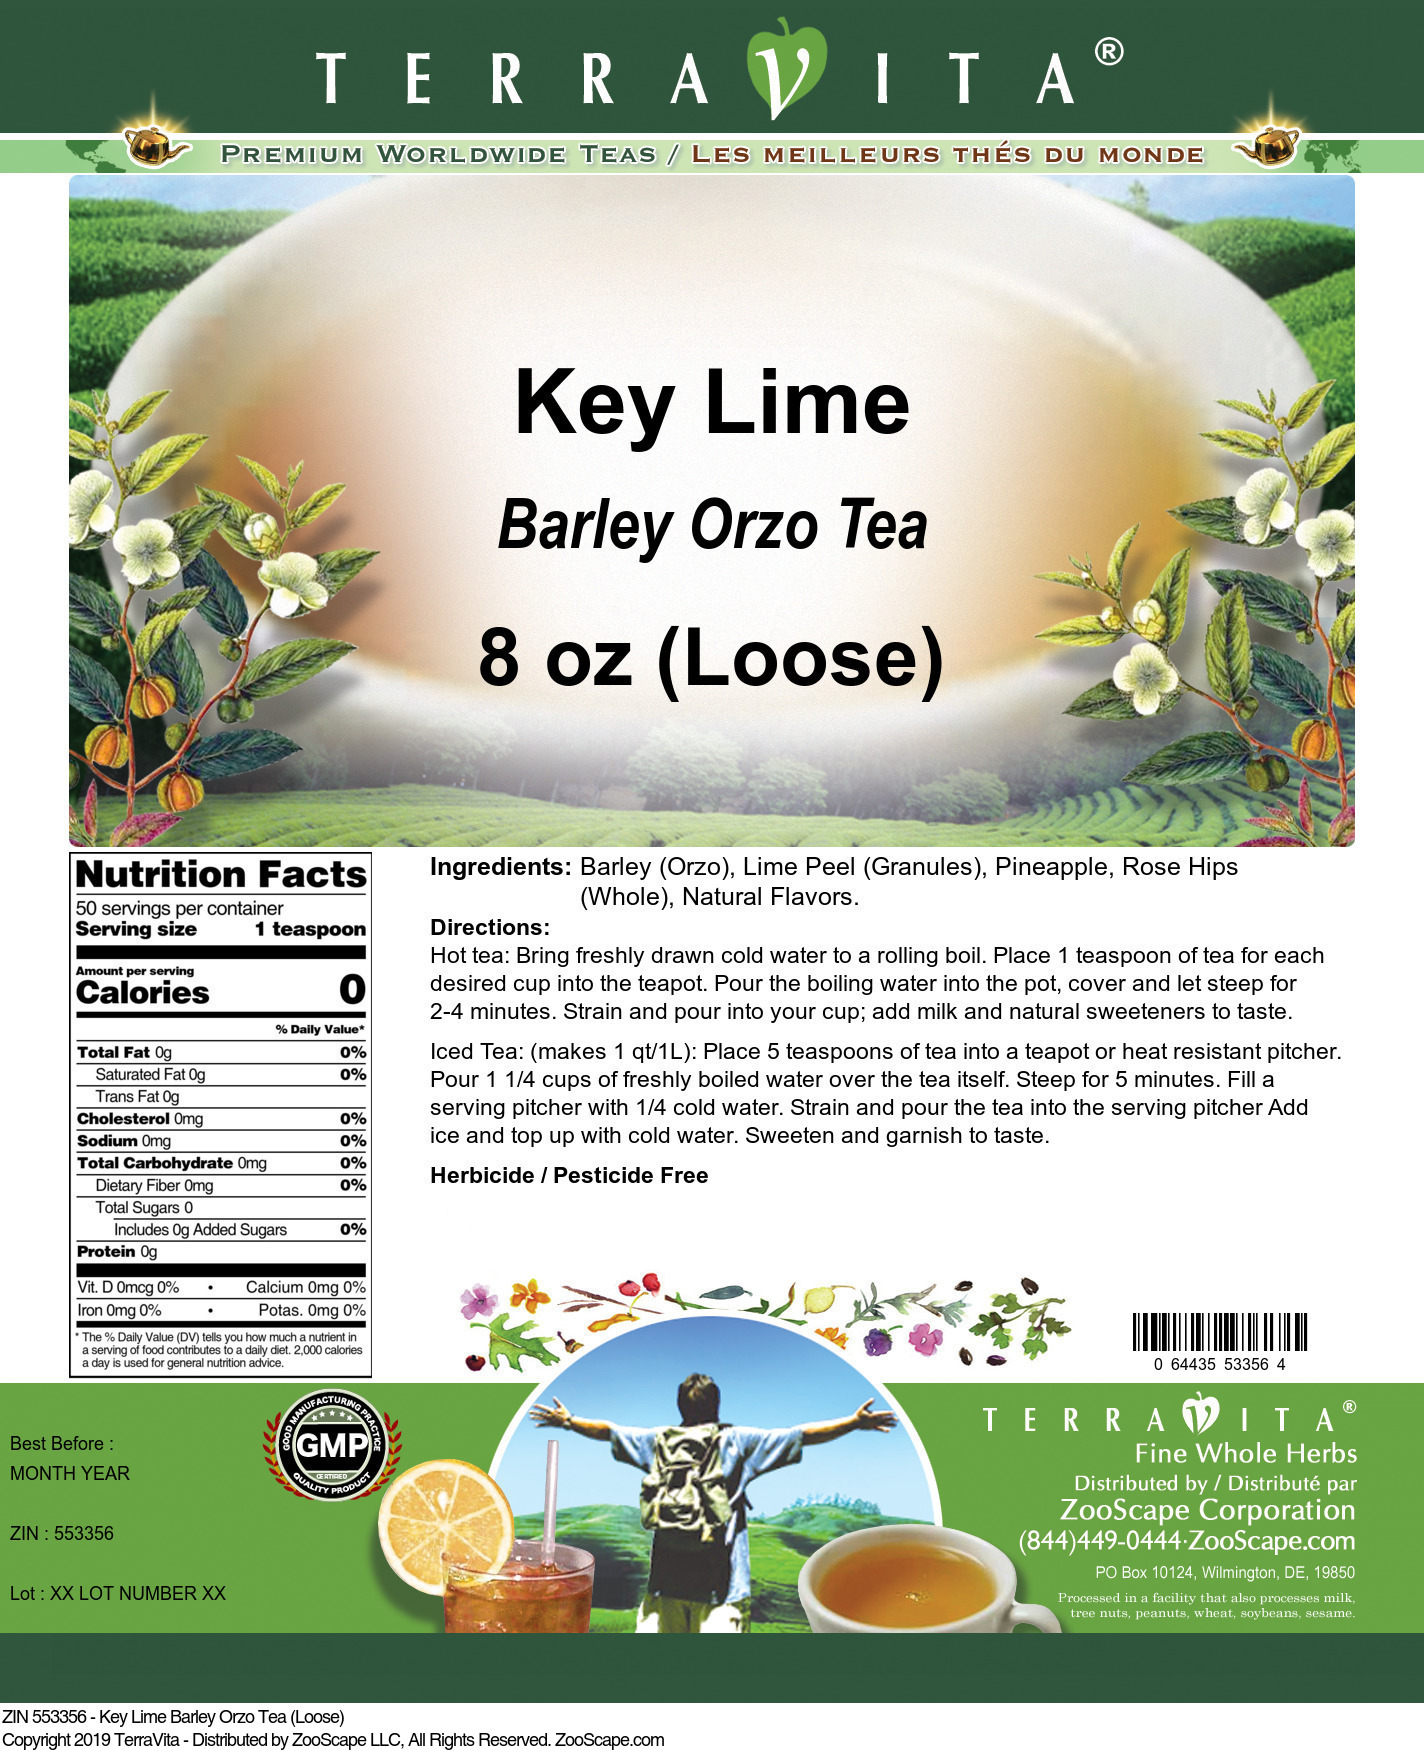 Key Lime Barley Orzo Tea (Loose) - Label